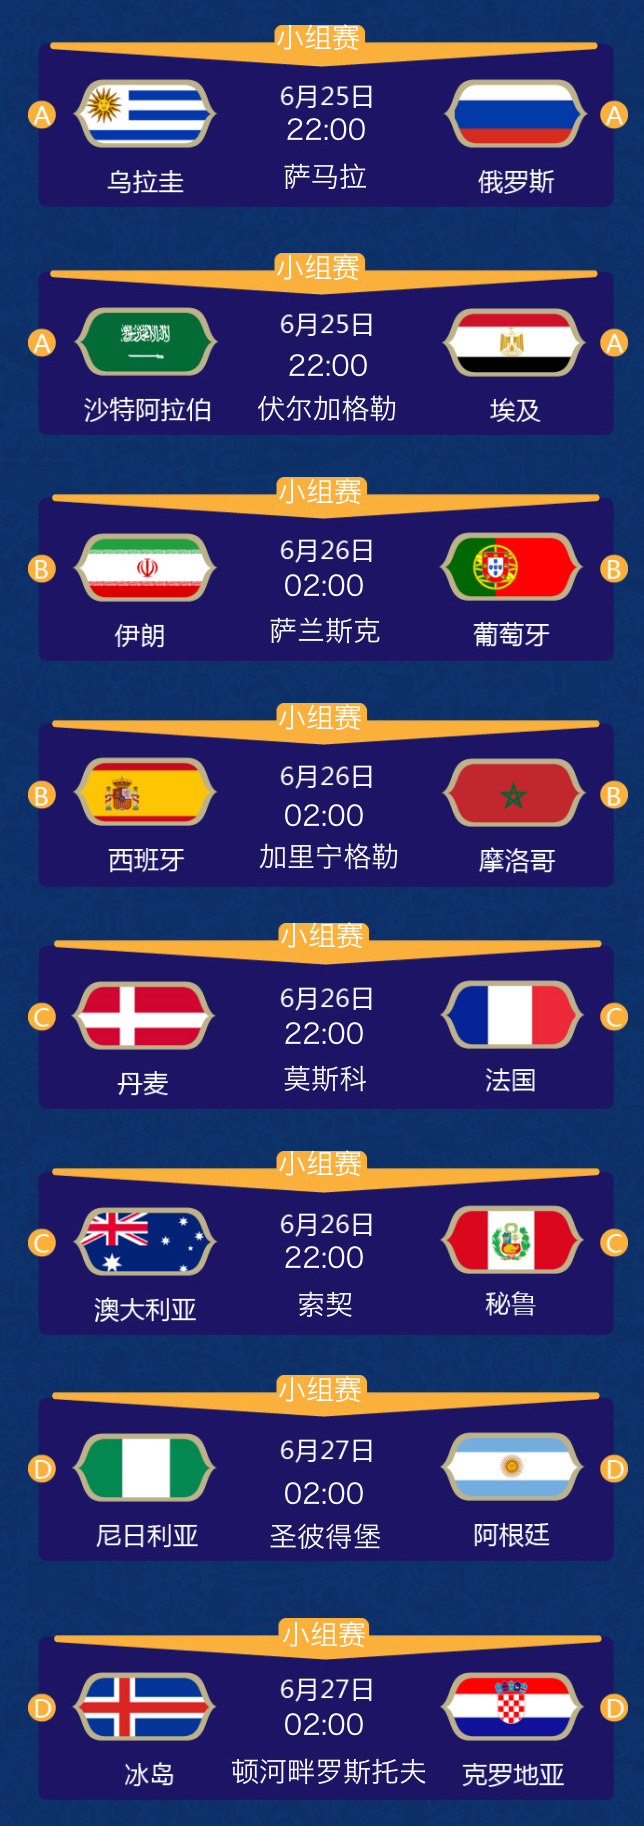 每年世界杯几月份开始举办_台湾金马奖每年举办时间_上海草莓音乐节每年什么时候举办